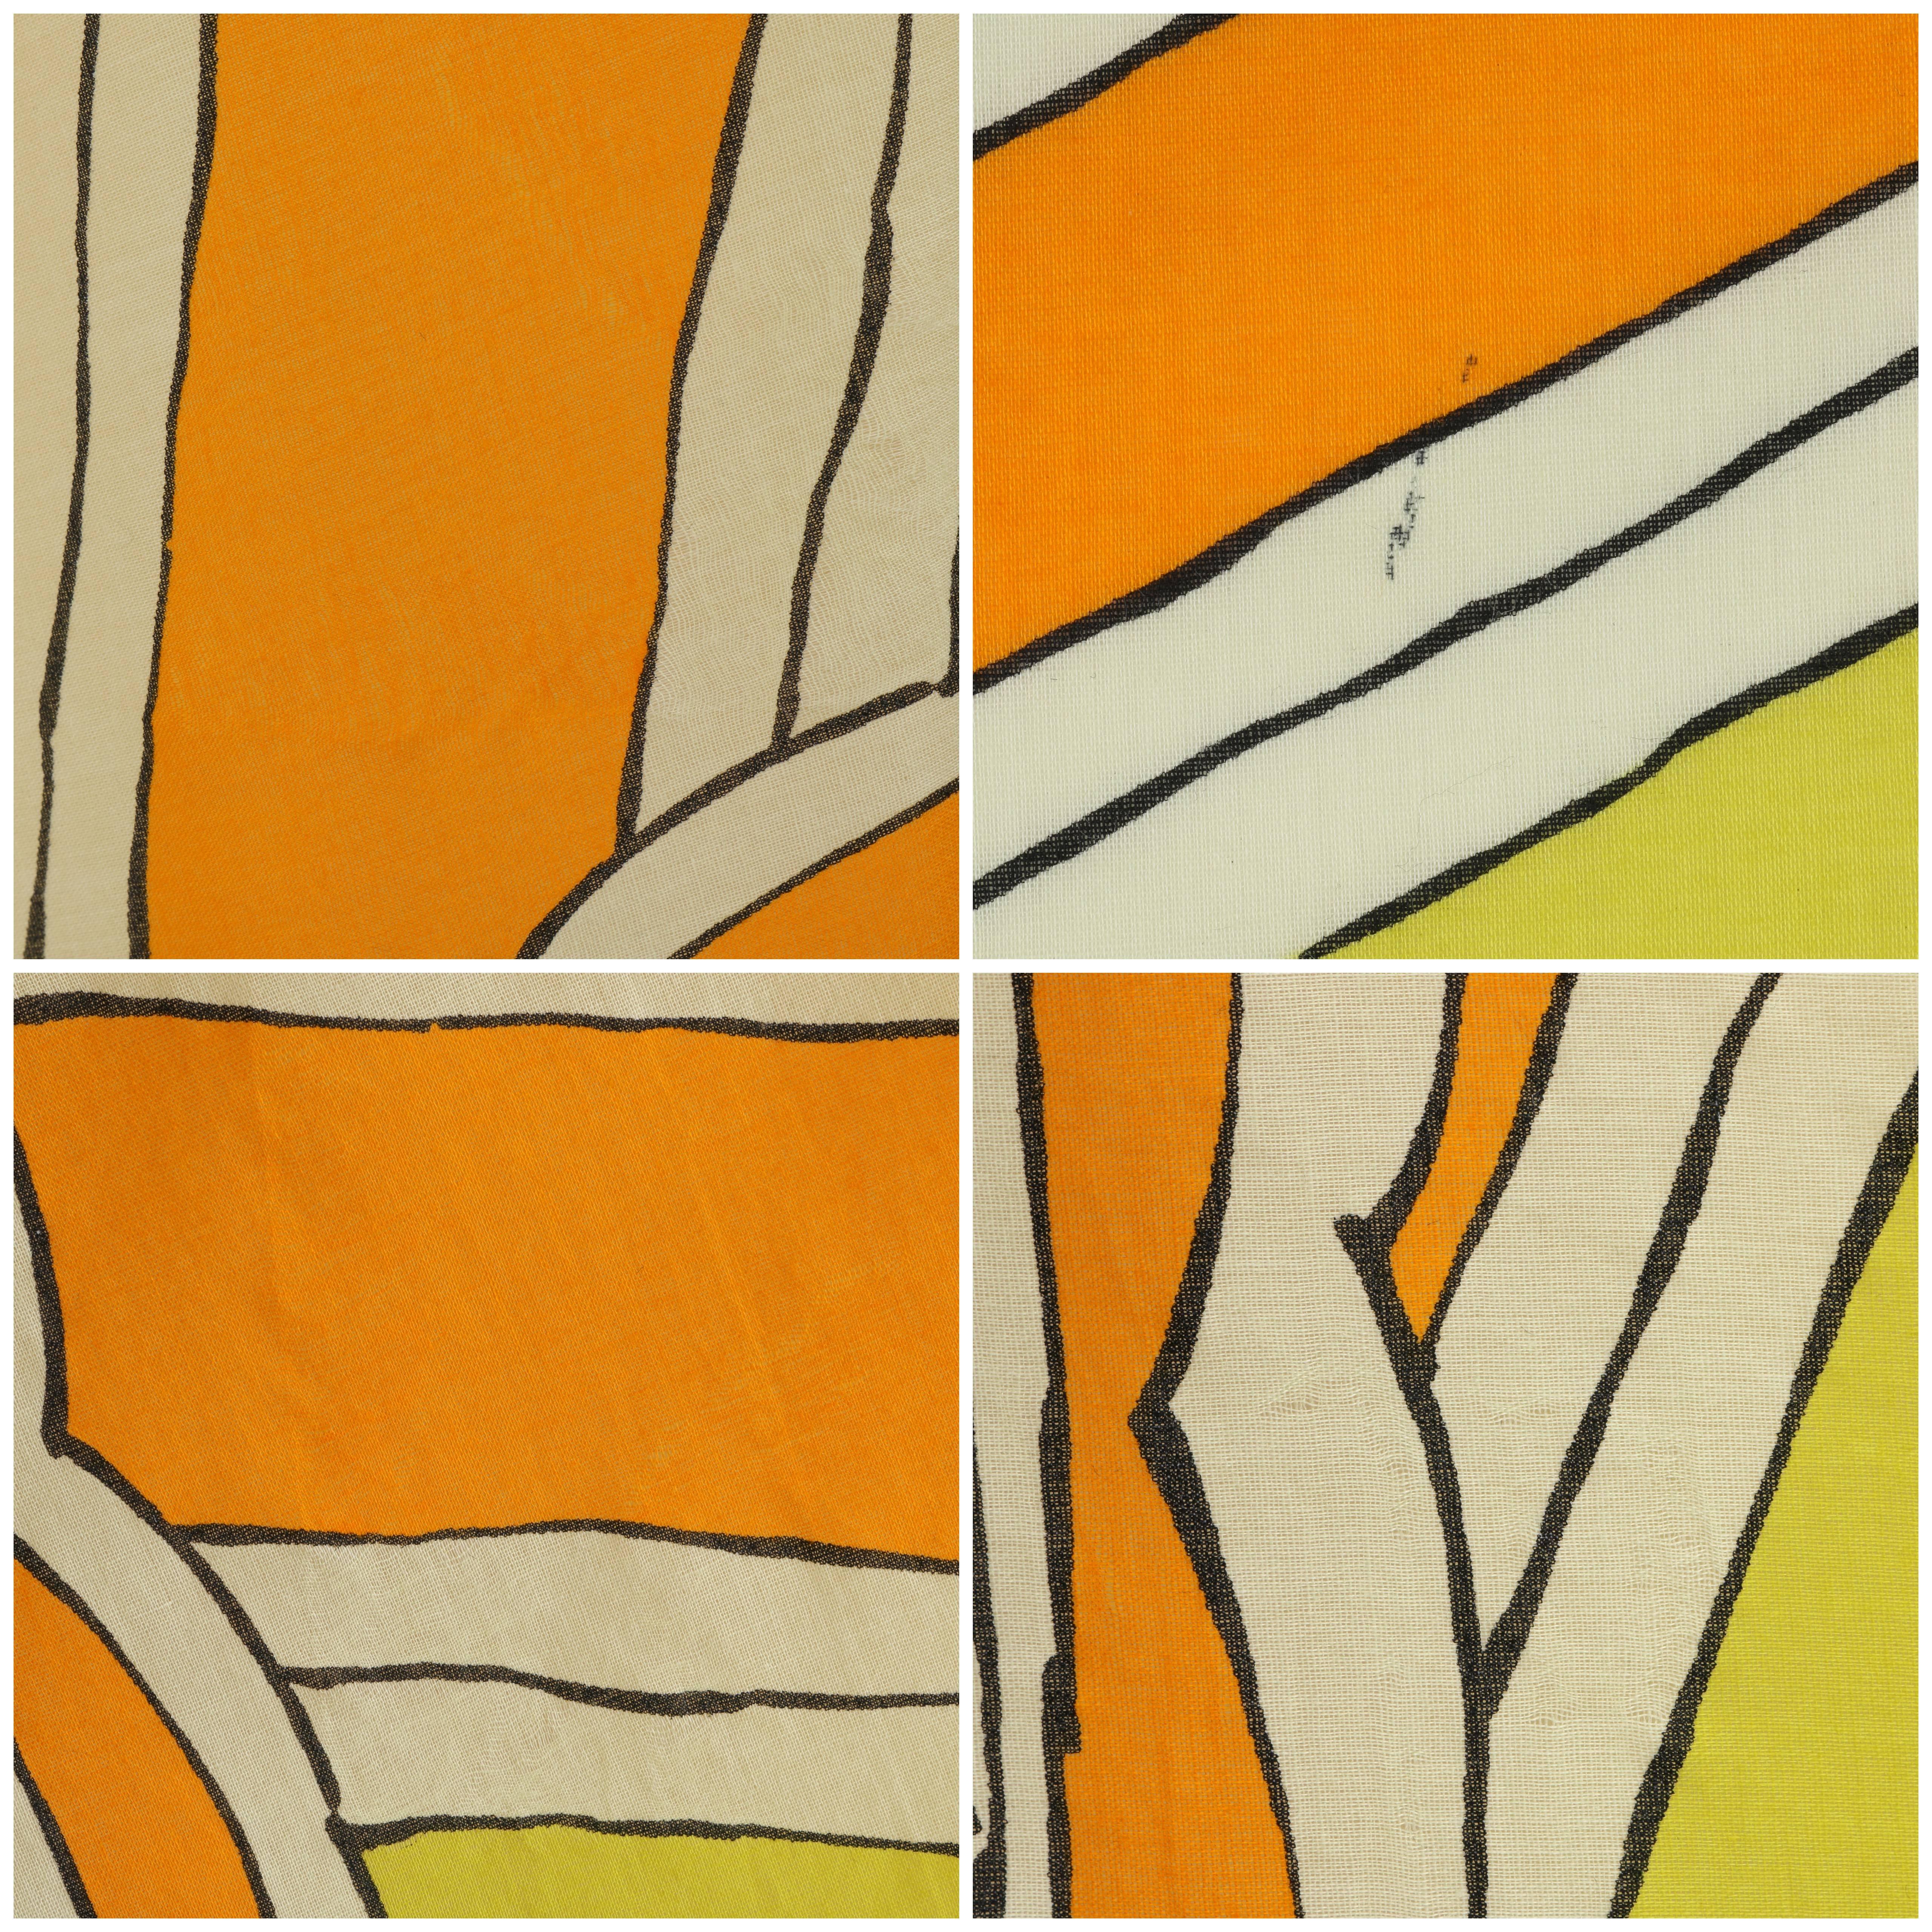 HERMES Giant Orange & Yellow Diagonal Striped Cotton Sarong Scarf Wrap Throw For Sale 3